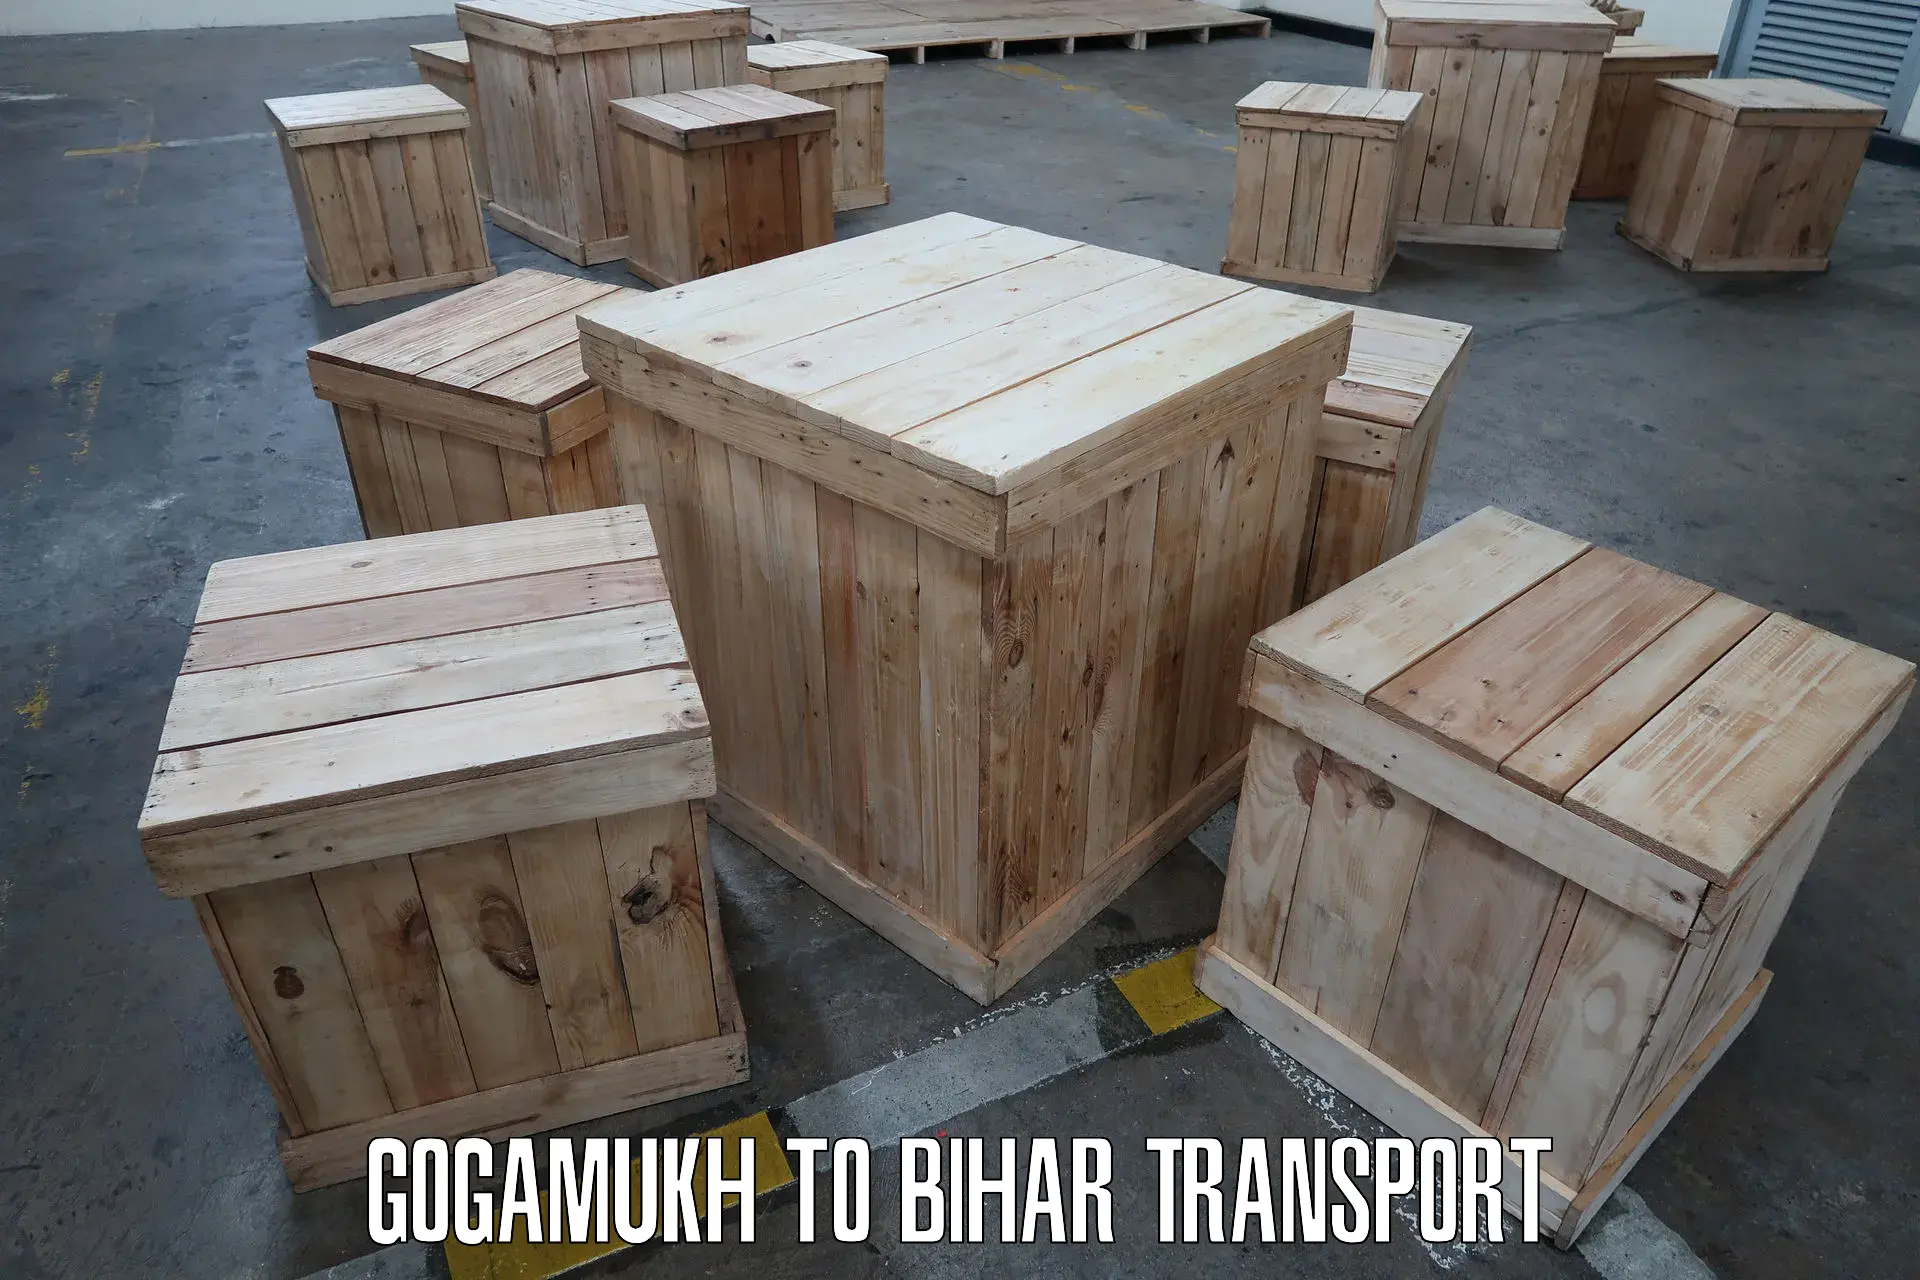 Goods delivery service Gogamukh to Jalalgarh